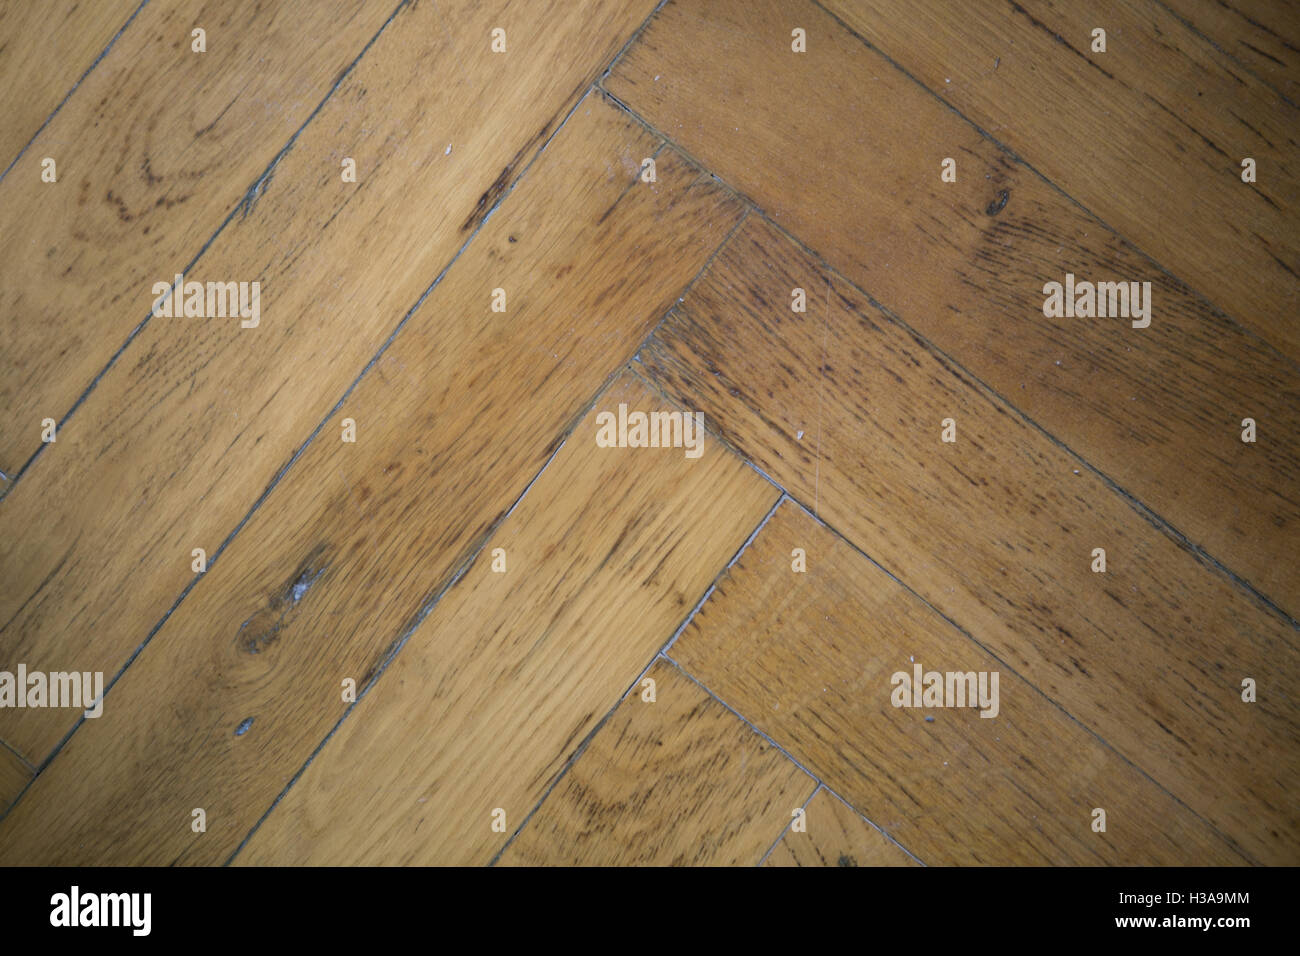 wooden floor texture, background. Stock Photo